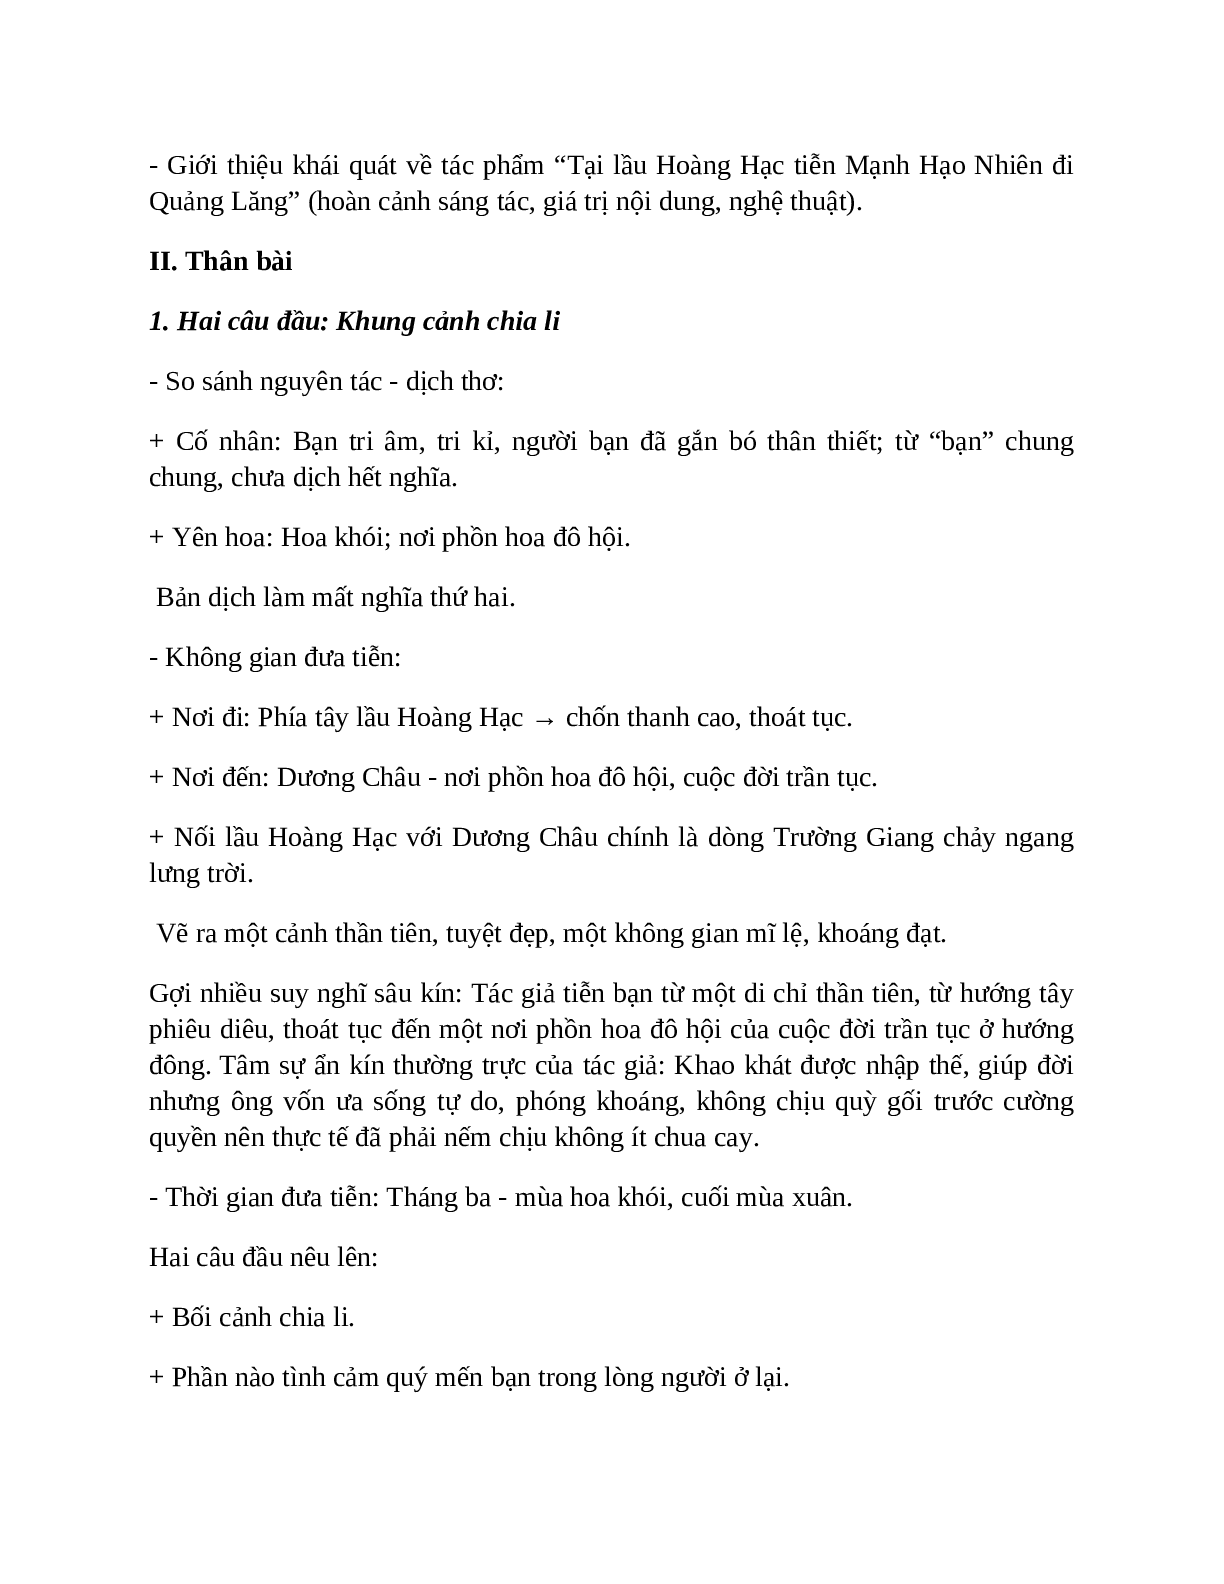 Sơ đồ tư duy bài Tại lầu Hoàng Hạc tiễn Mạnh Hạo Nhiên đi Quảng Lăng dễ nhớ, ngắn nhất - Ngữ văn lớp 10 (trang 3)